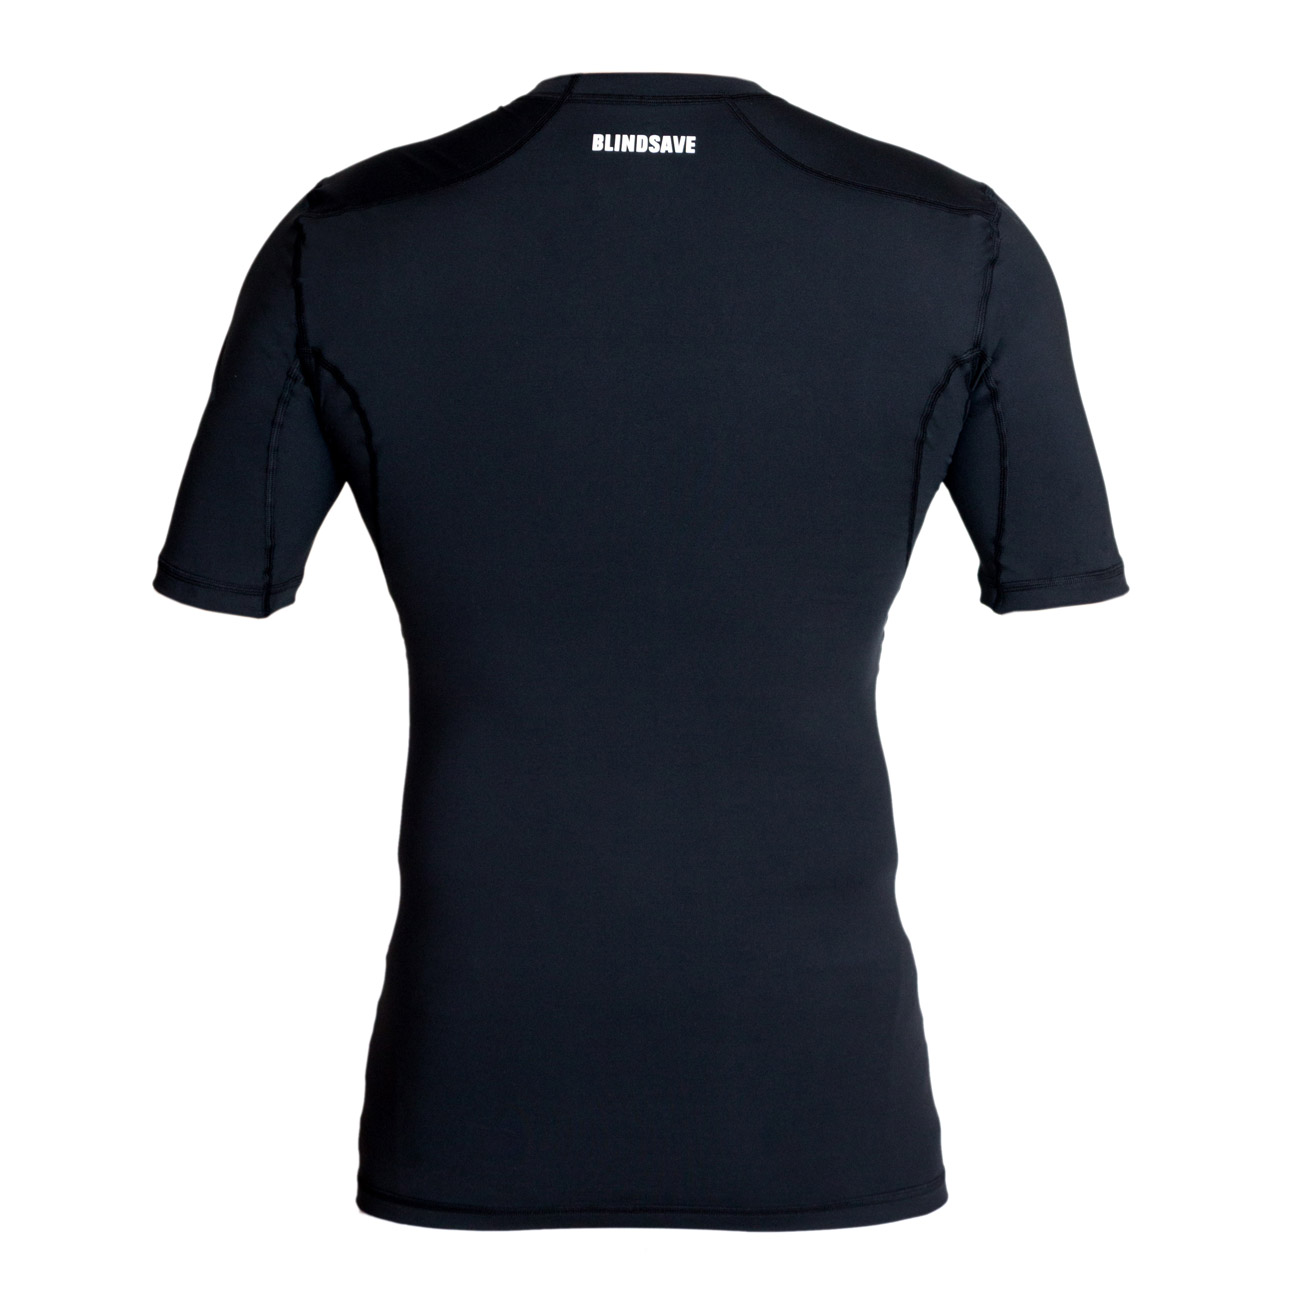 BLINDSAVE Compression Shirt Short Sleeves